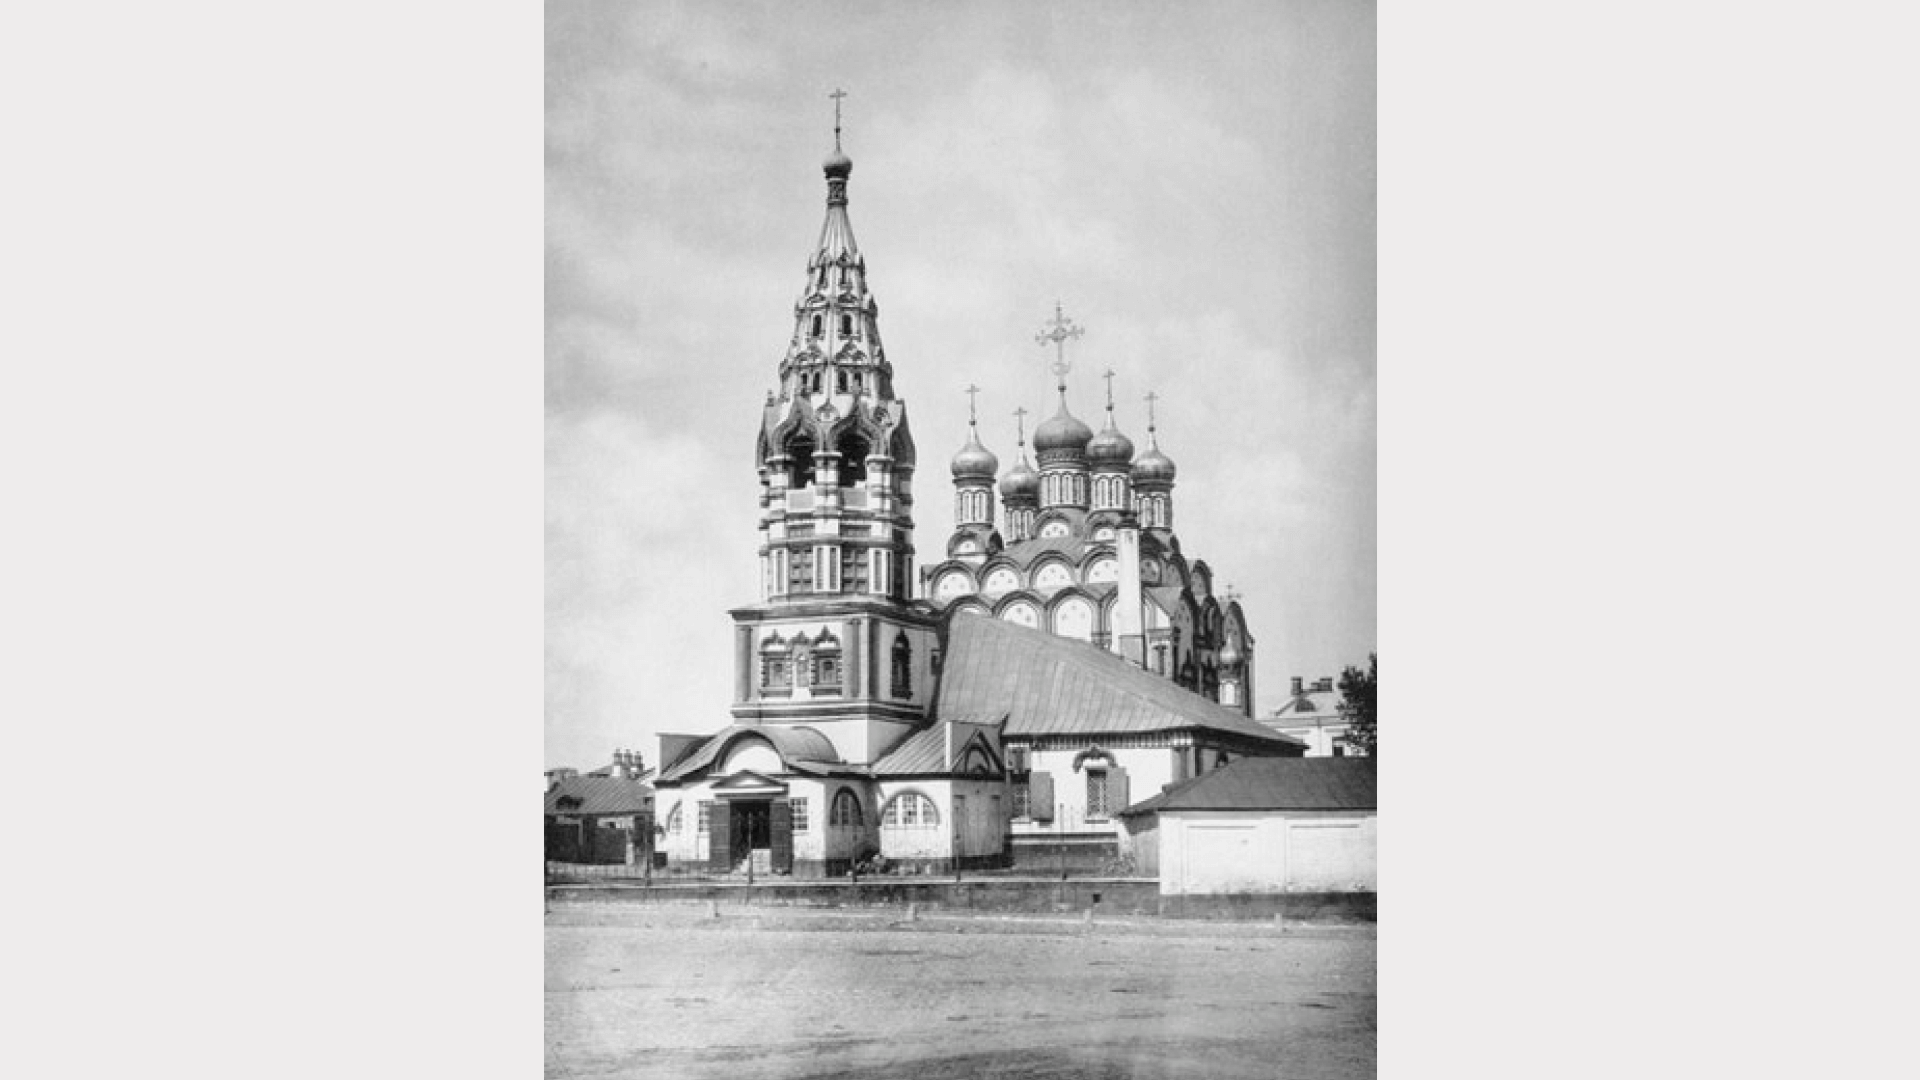 Фотография из альбома Николая Найденова. 1883 год. Источник: https://ru.wikipedia.org/